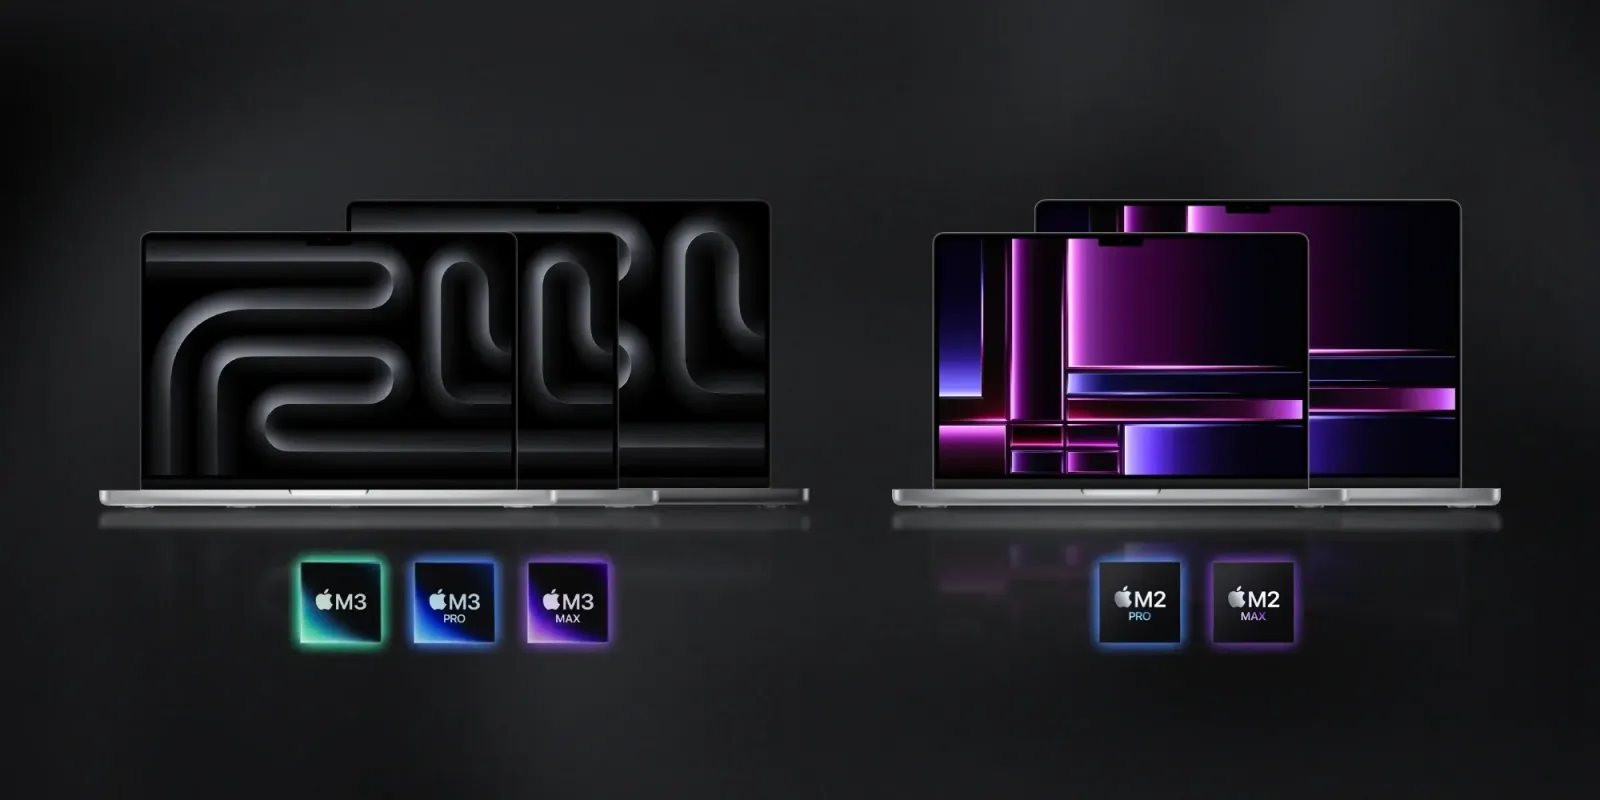 m3-macbook-pro-vs-m2-macbook-pro.jpg